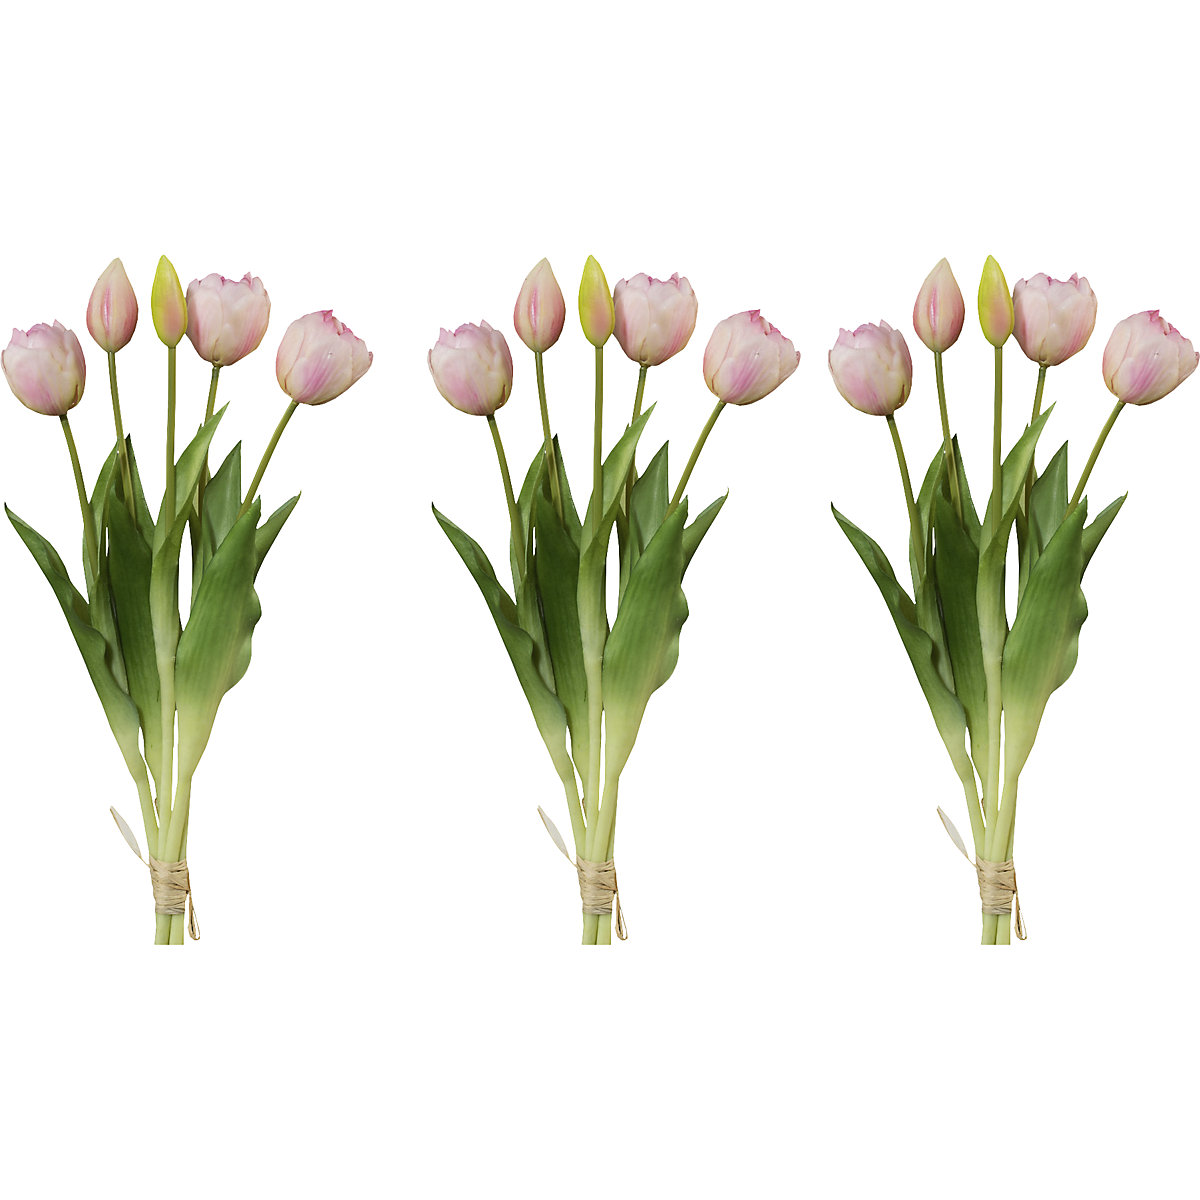 Ramo de 5 tulipas frisadas, toque real